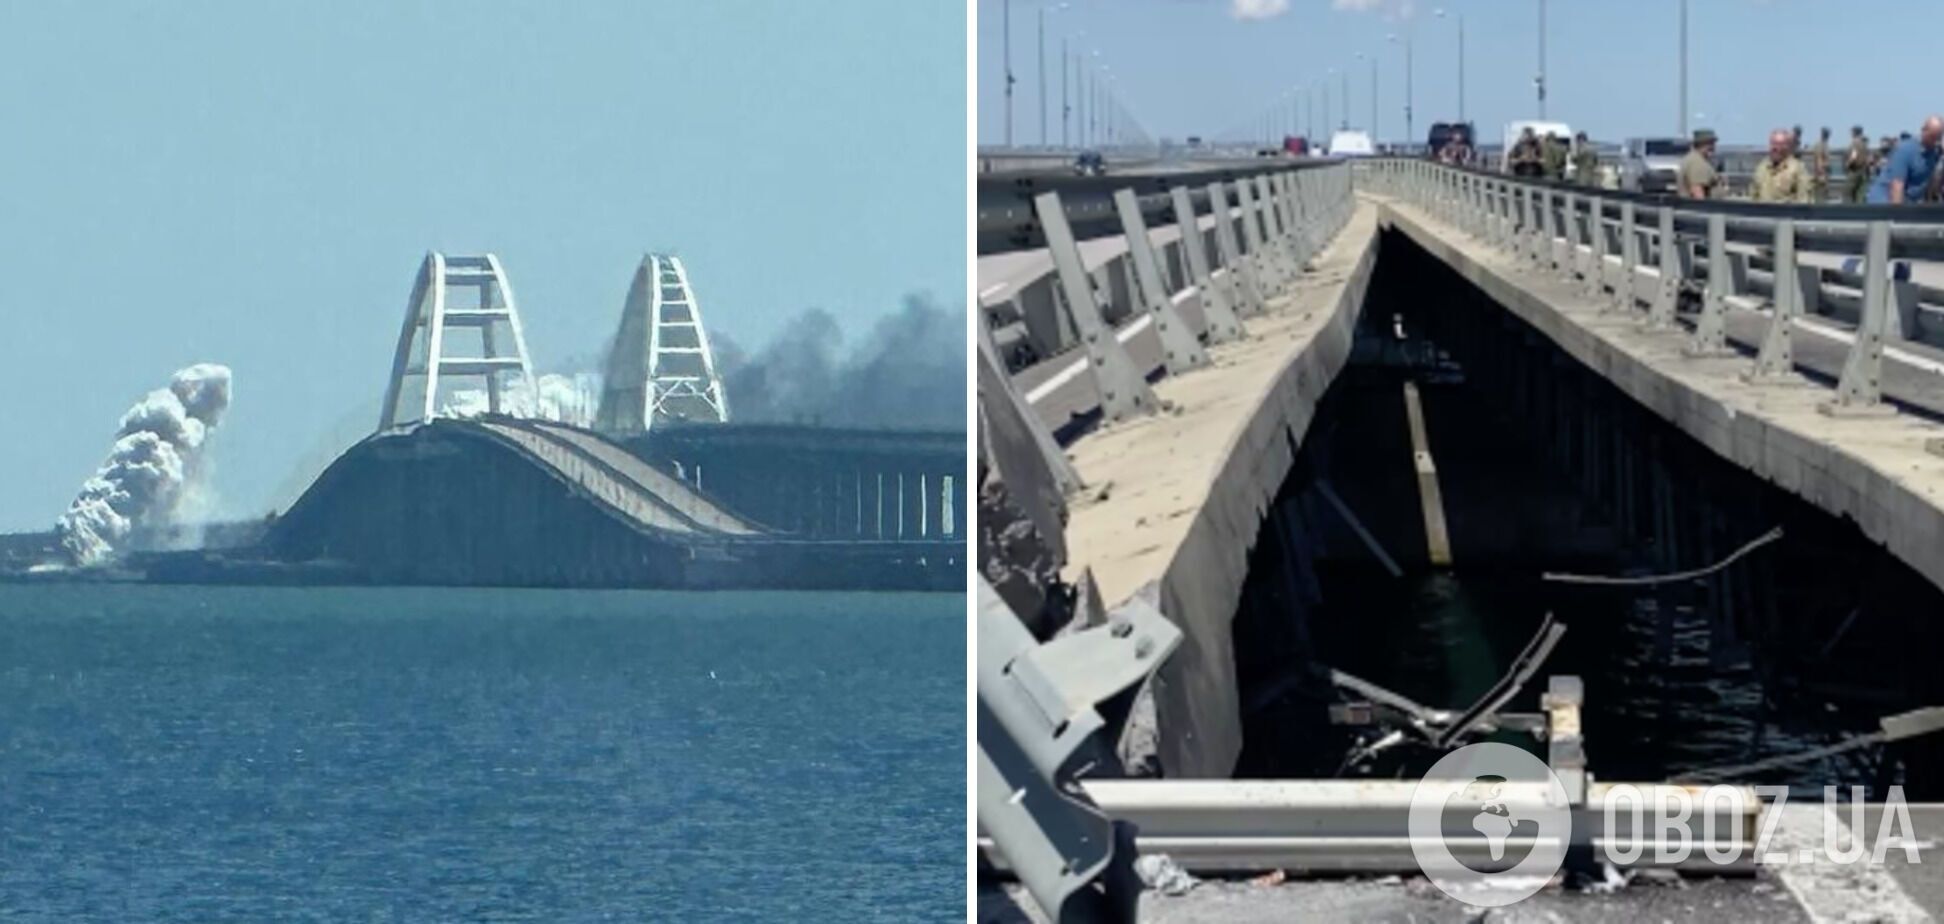 Оккупанты отремонтировали Крымский мост после июльской атаки: установлен новый пролет. Спутниковые фото